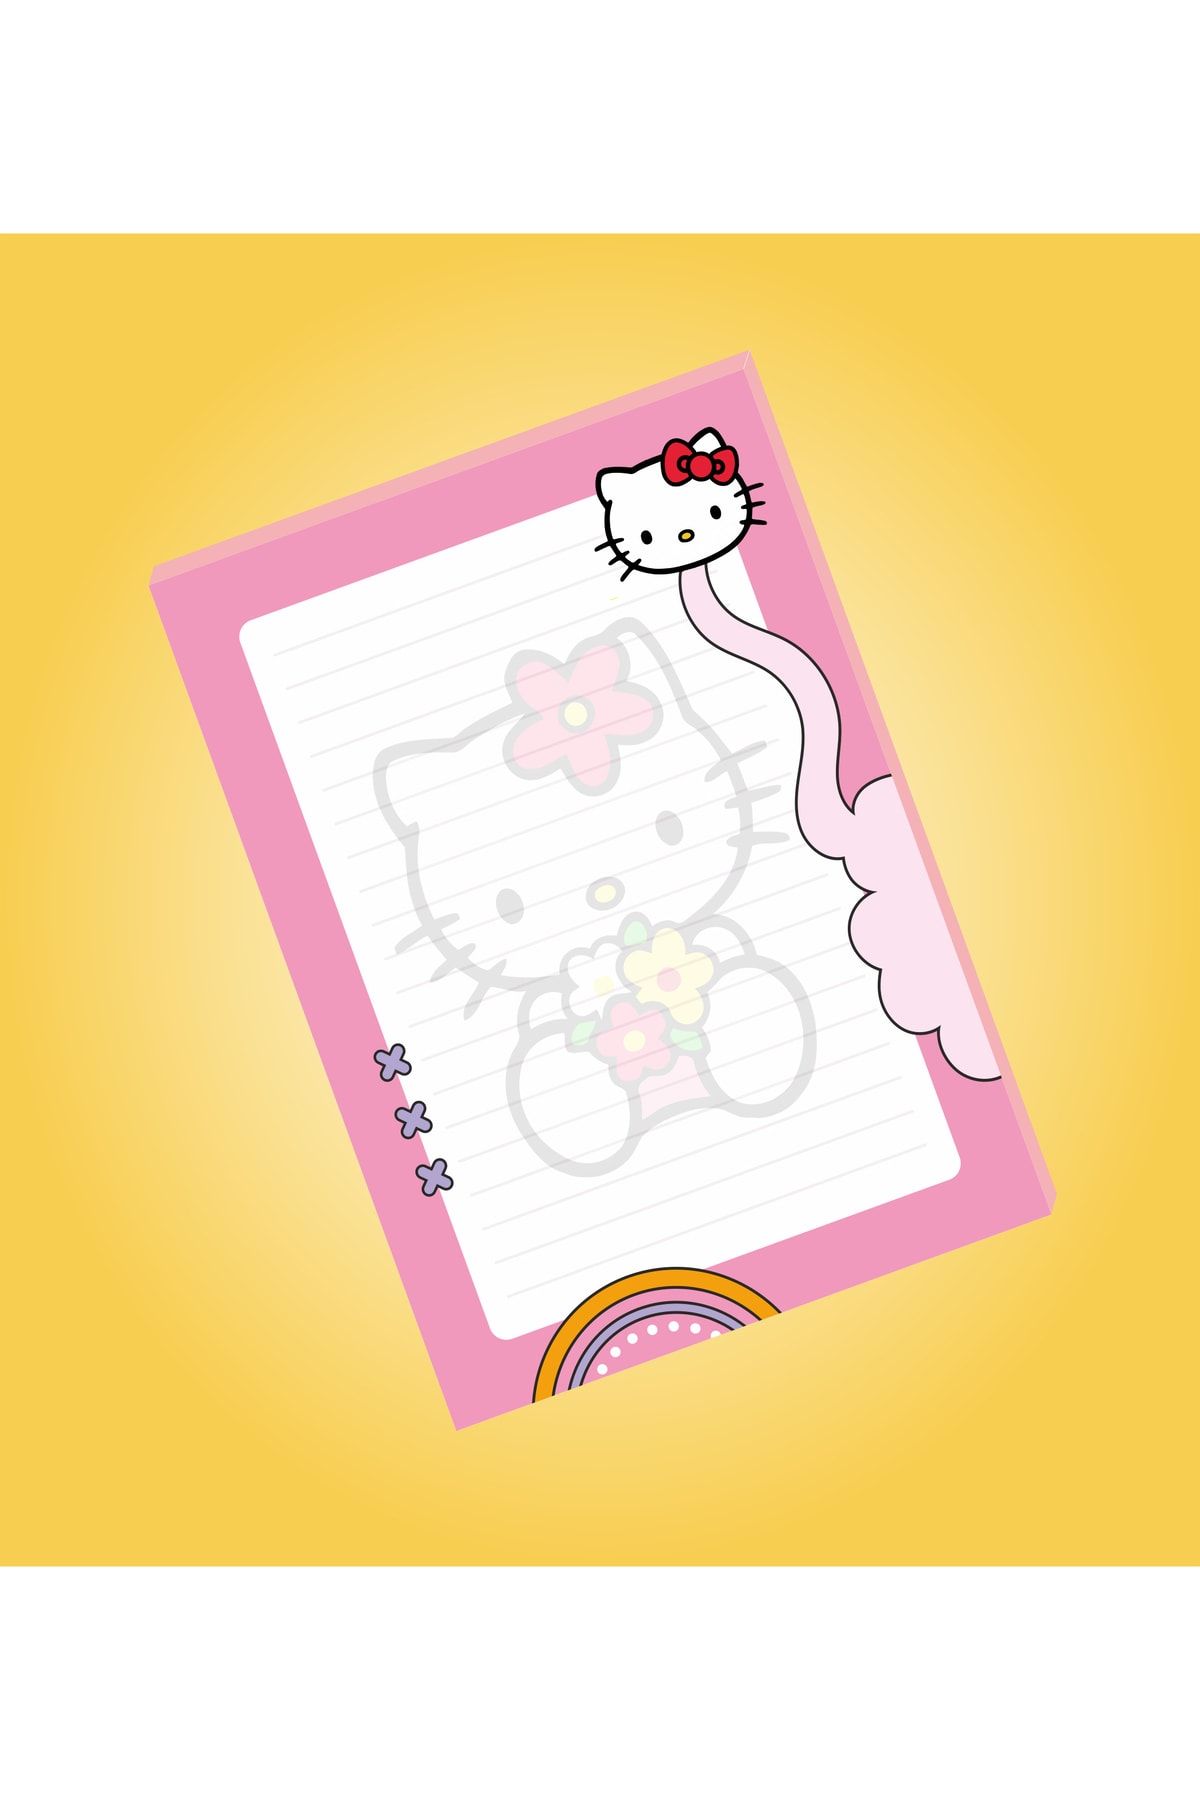 Ceres Studio Hello Kitty Not Defterleri | Notepad | Bloknot | A5 (14x20cm) 40 Sayfa Not Defteri